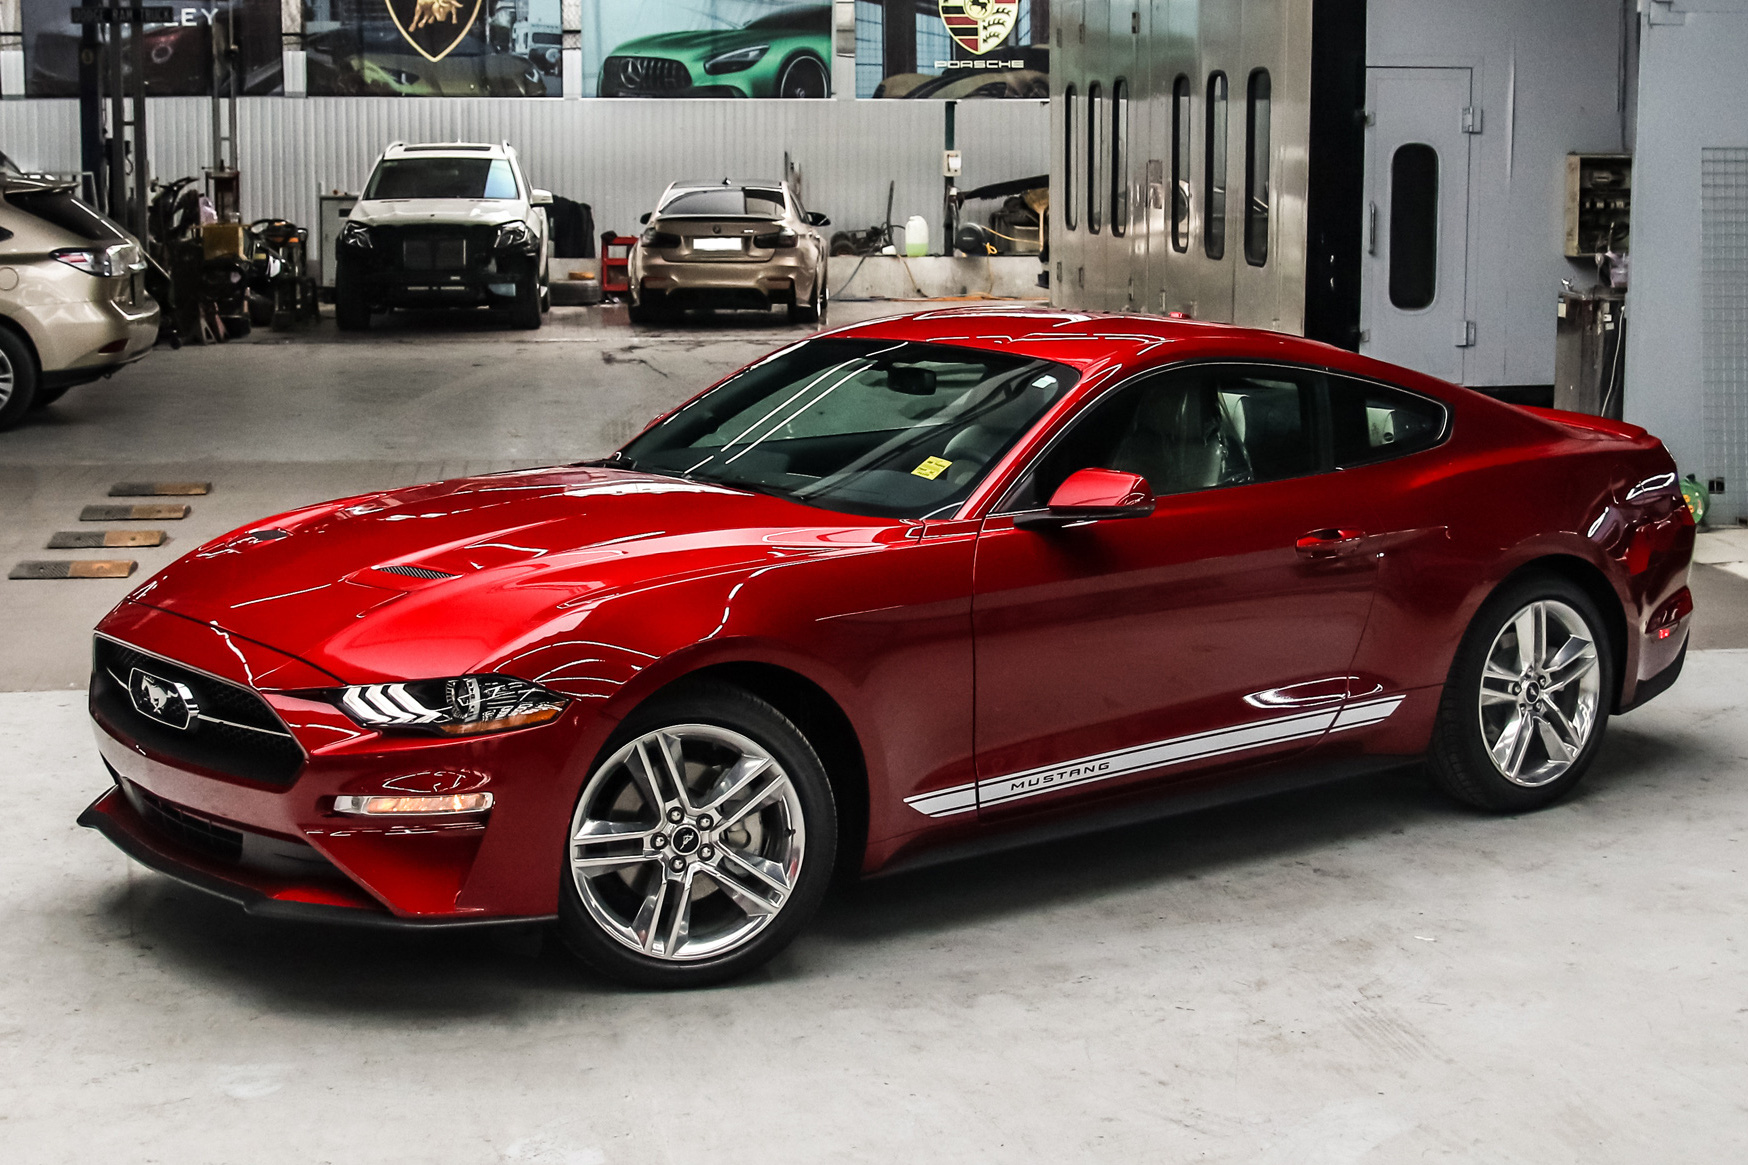 Ford Mustang bán chạy kỷ lục trong phân khúc xe thể thao